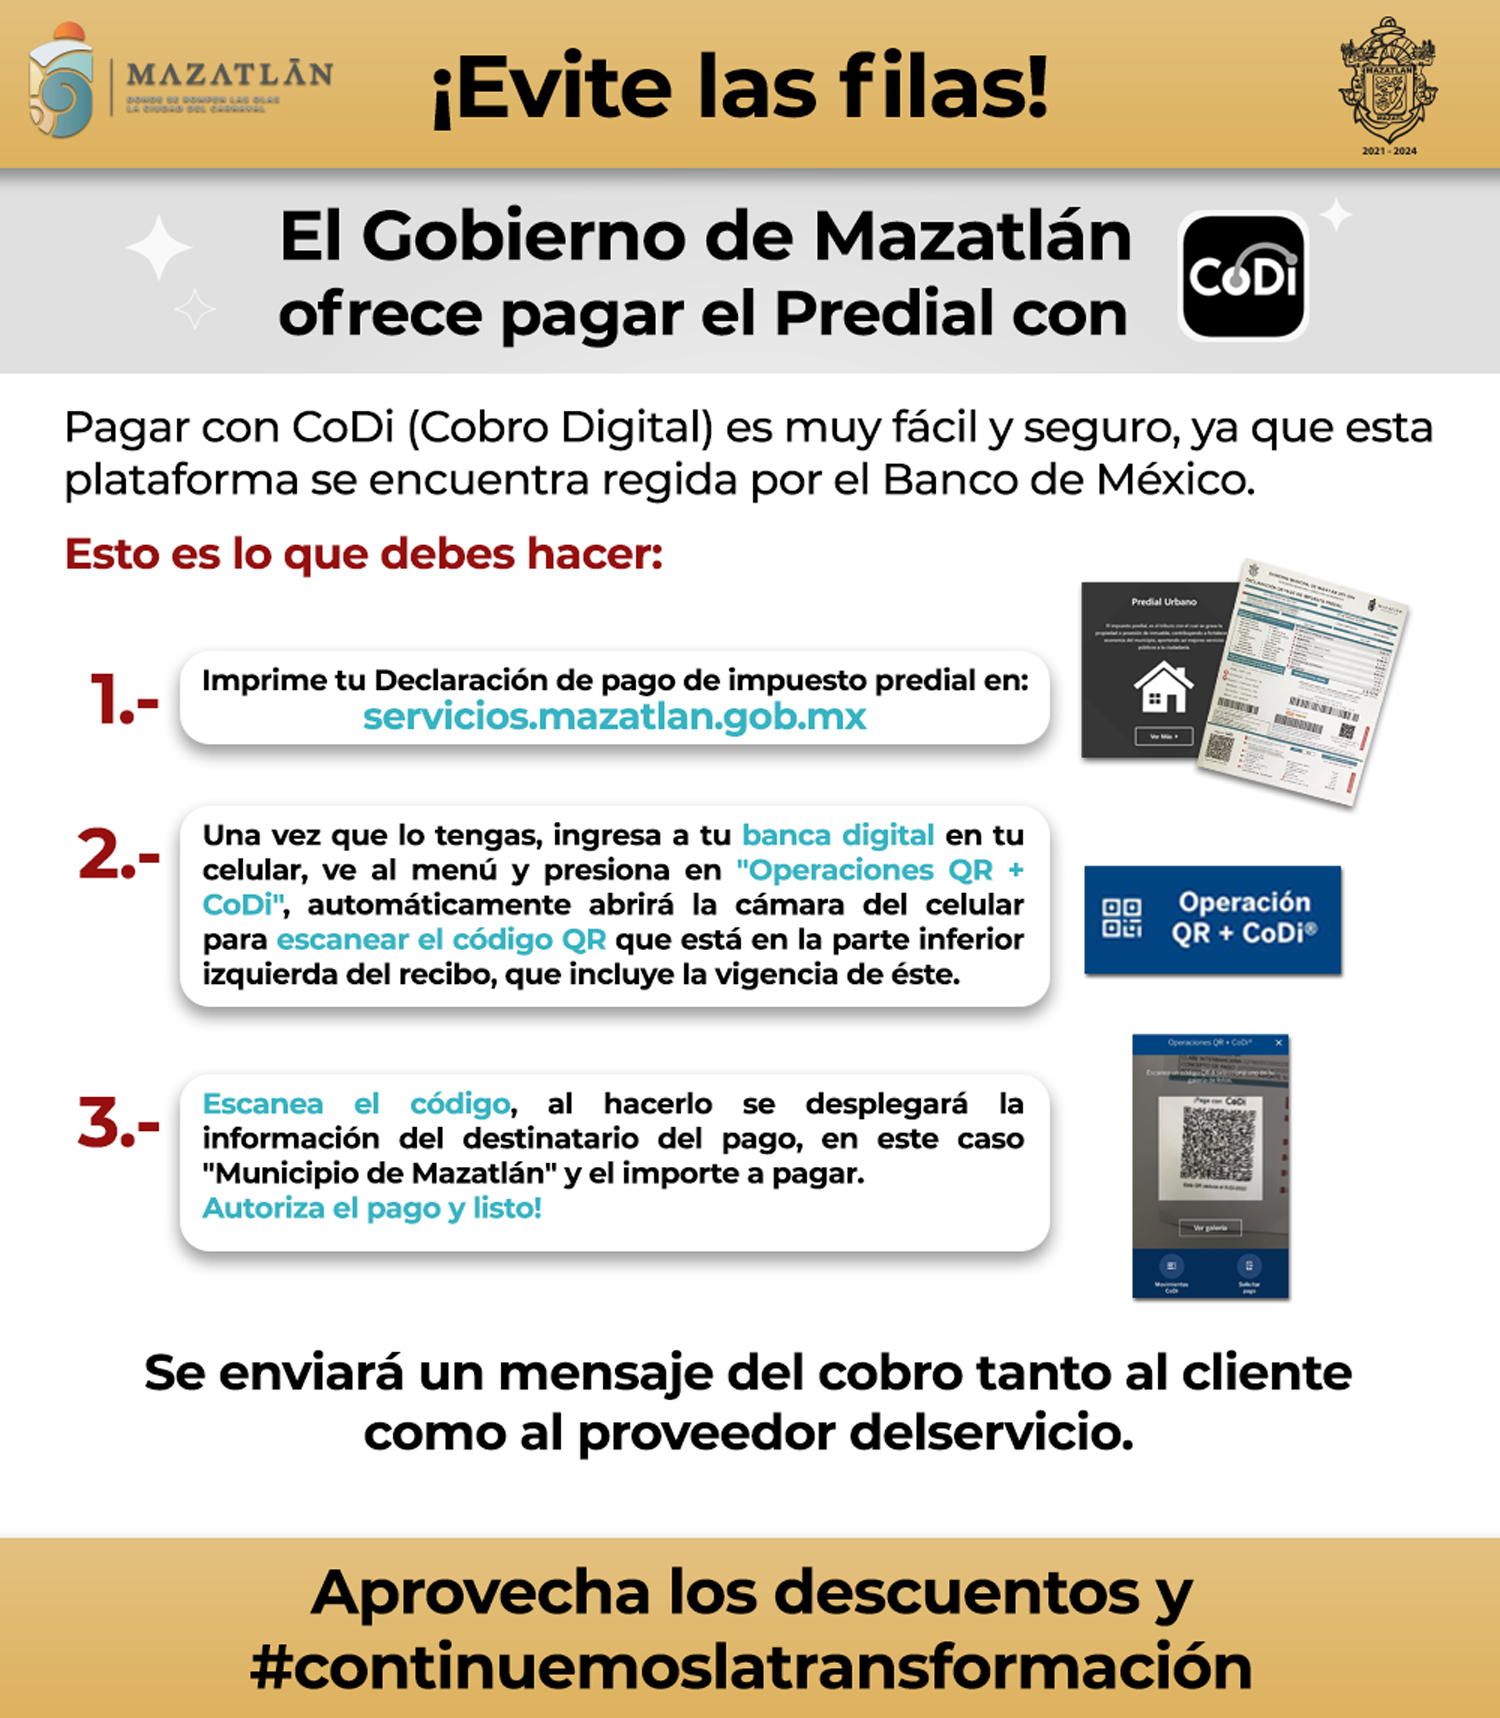 Evite las filas, el Gobierno de Mazatlán ofrece pagar el Predial con CoDi